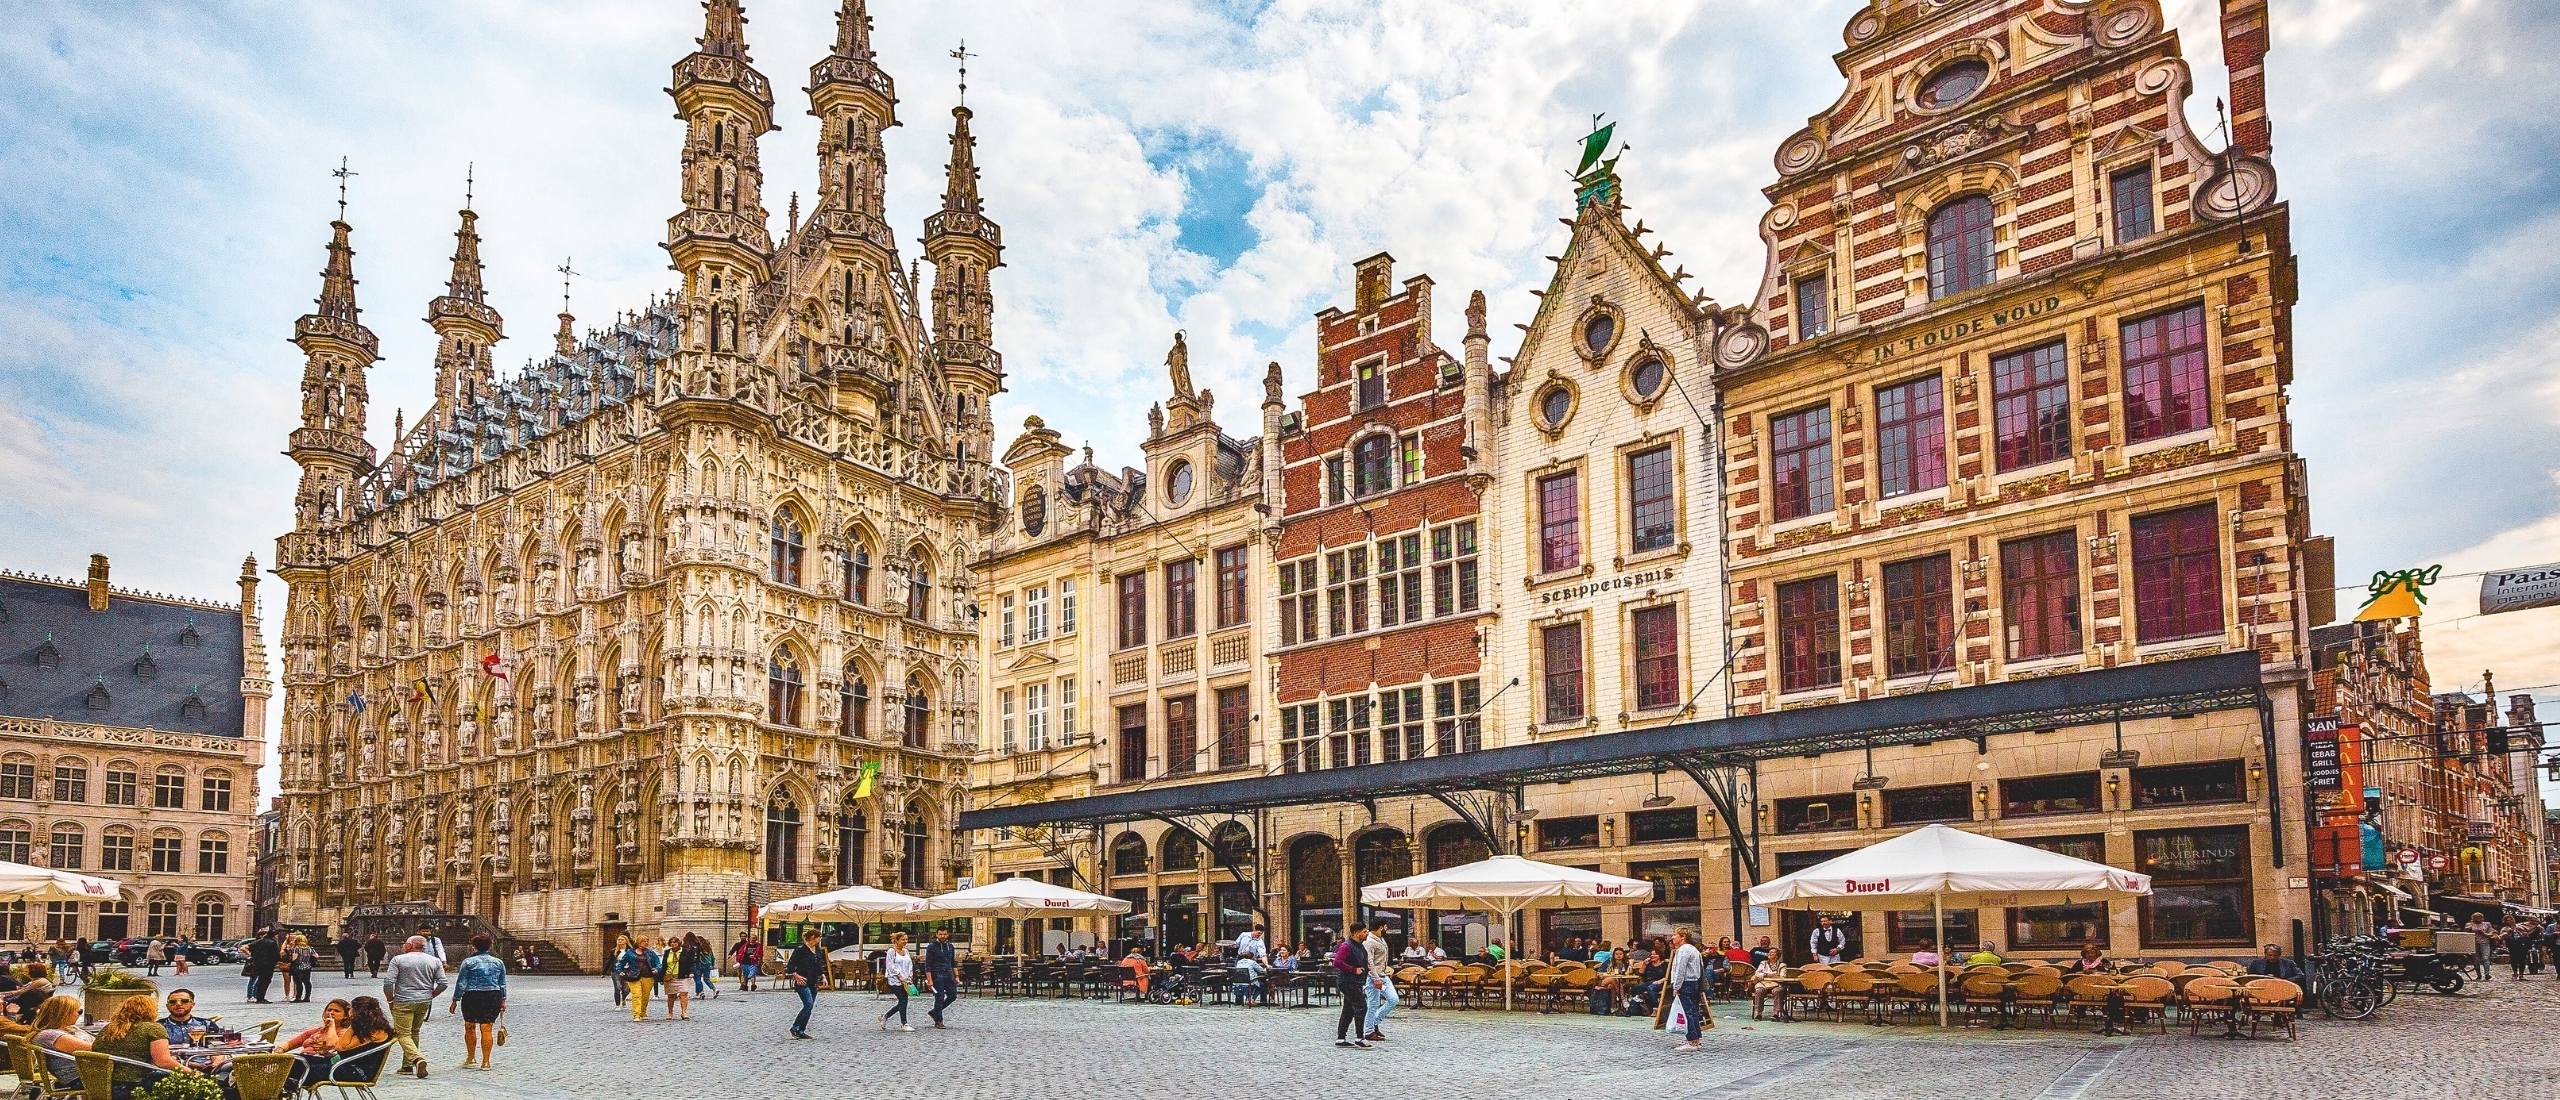 Stedentrip naar Leuven! De beste uitjes, bezienswaardigheden, restaurants en hotels in deze bruisende stad!